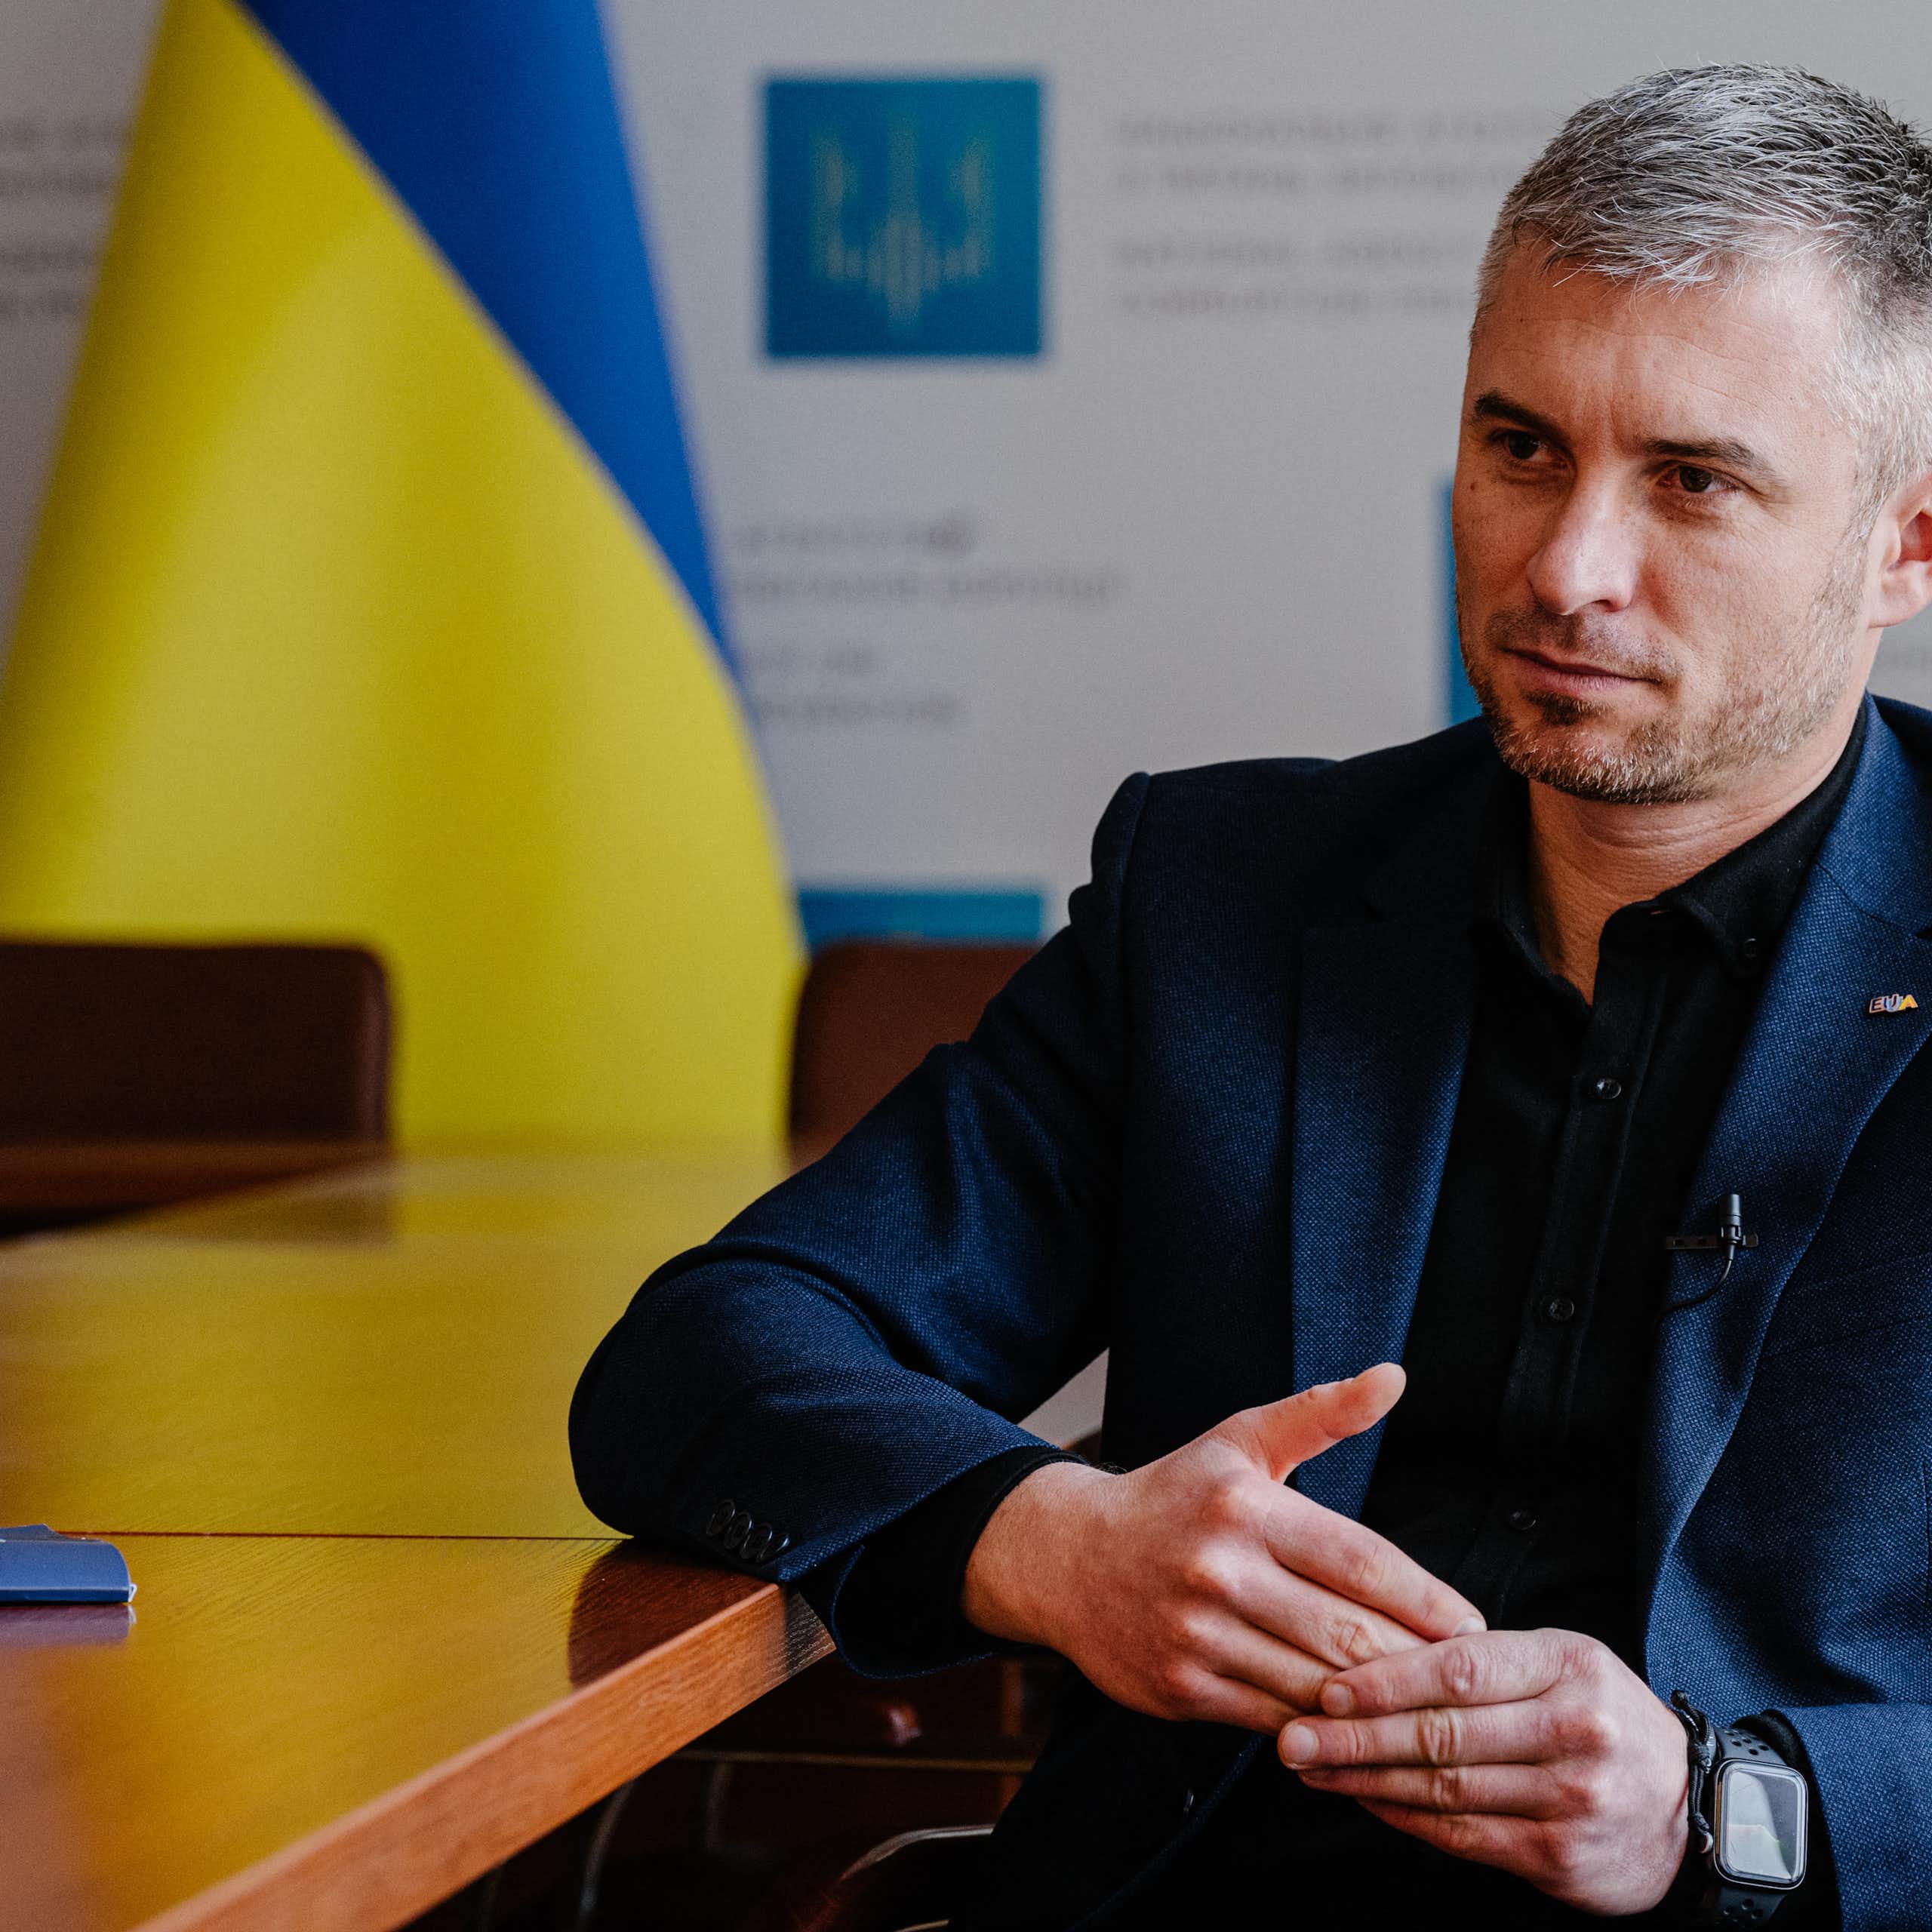 Un homme assis à un bureau, avec le drapeau ukrainien en arrière-fond